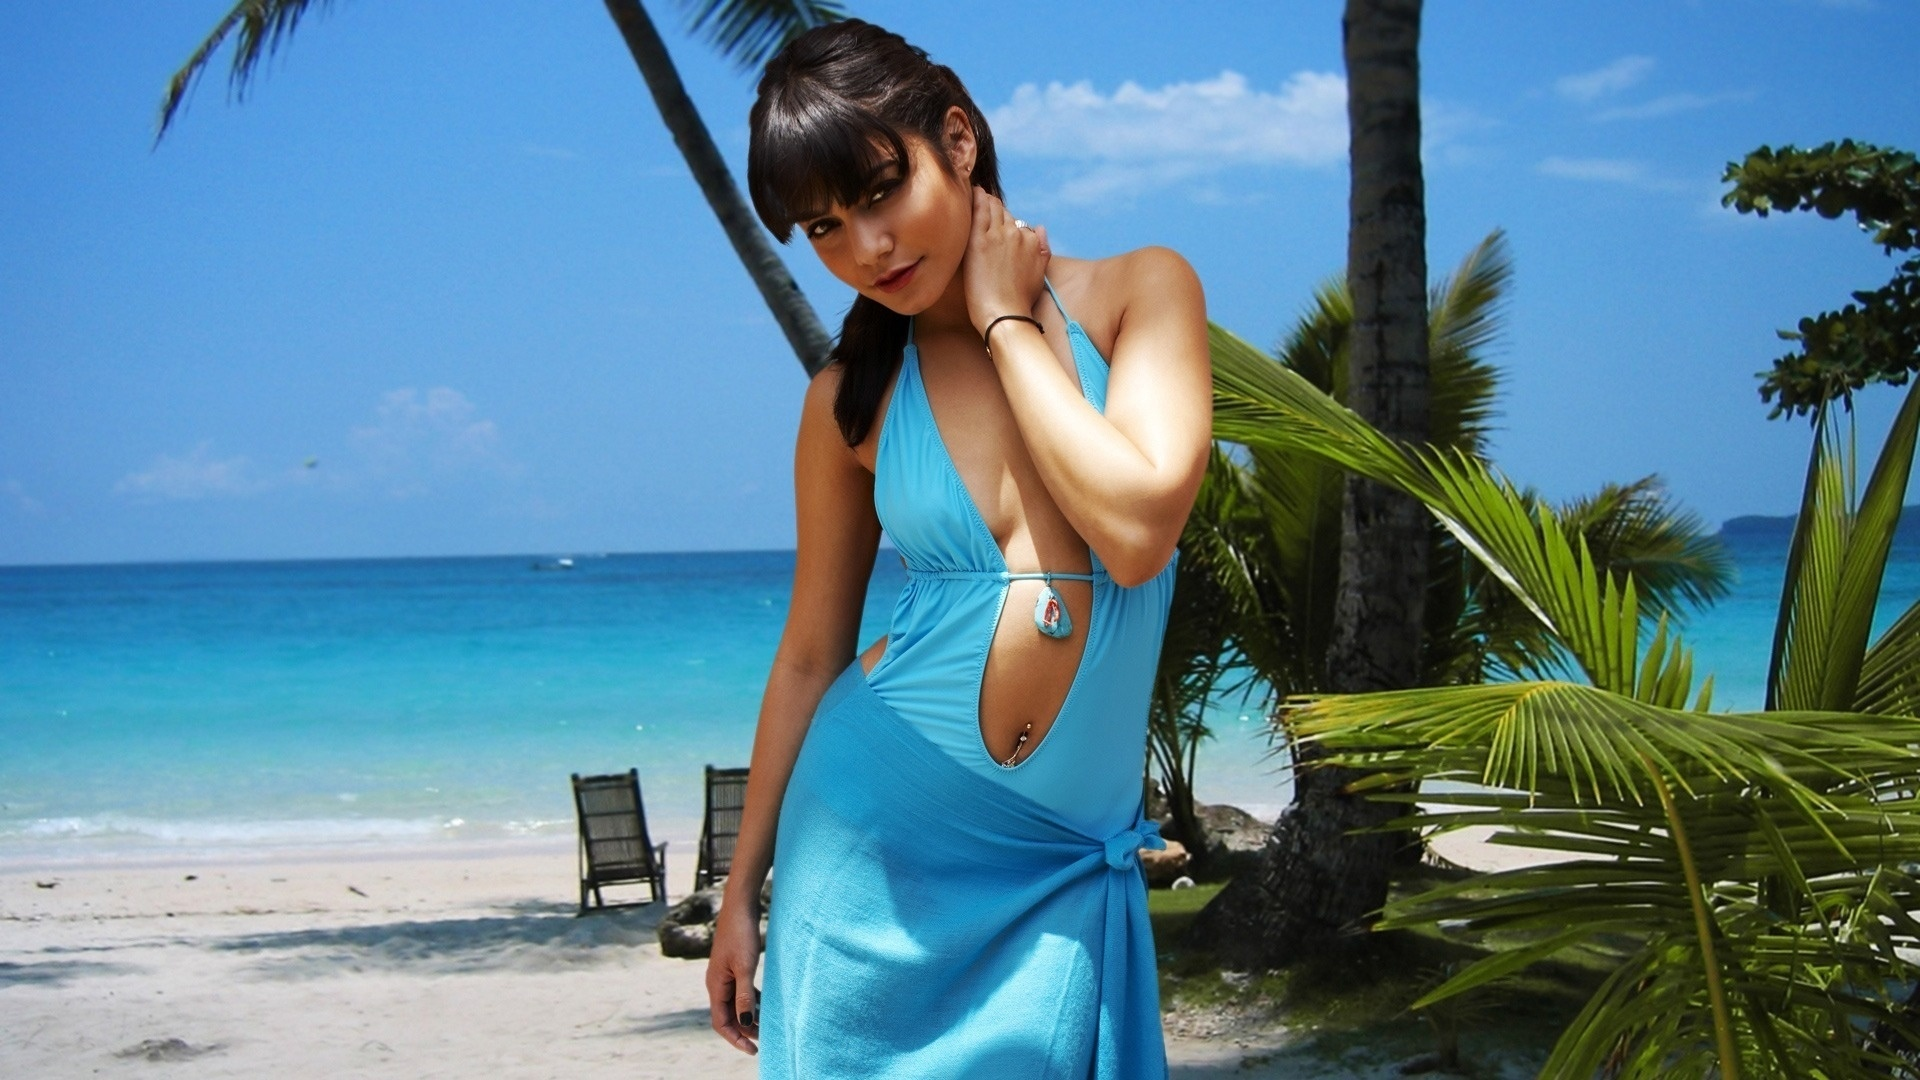 Сексуальная тайская девушка на пляже